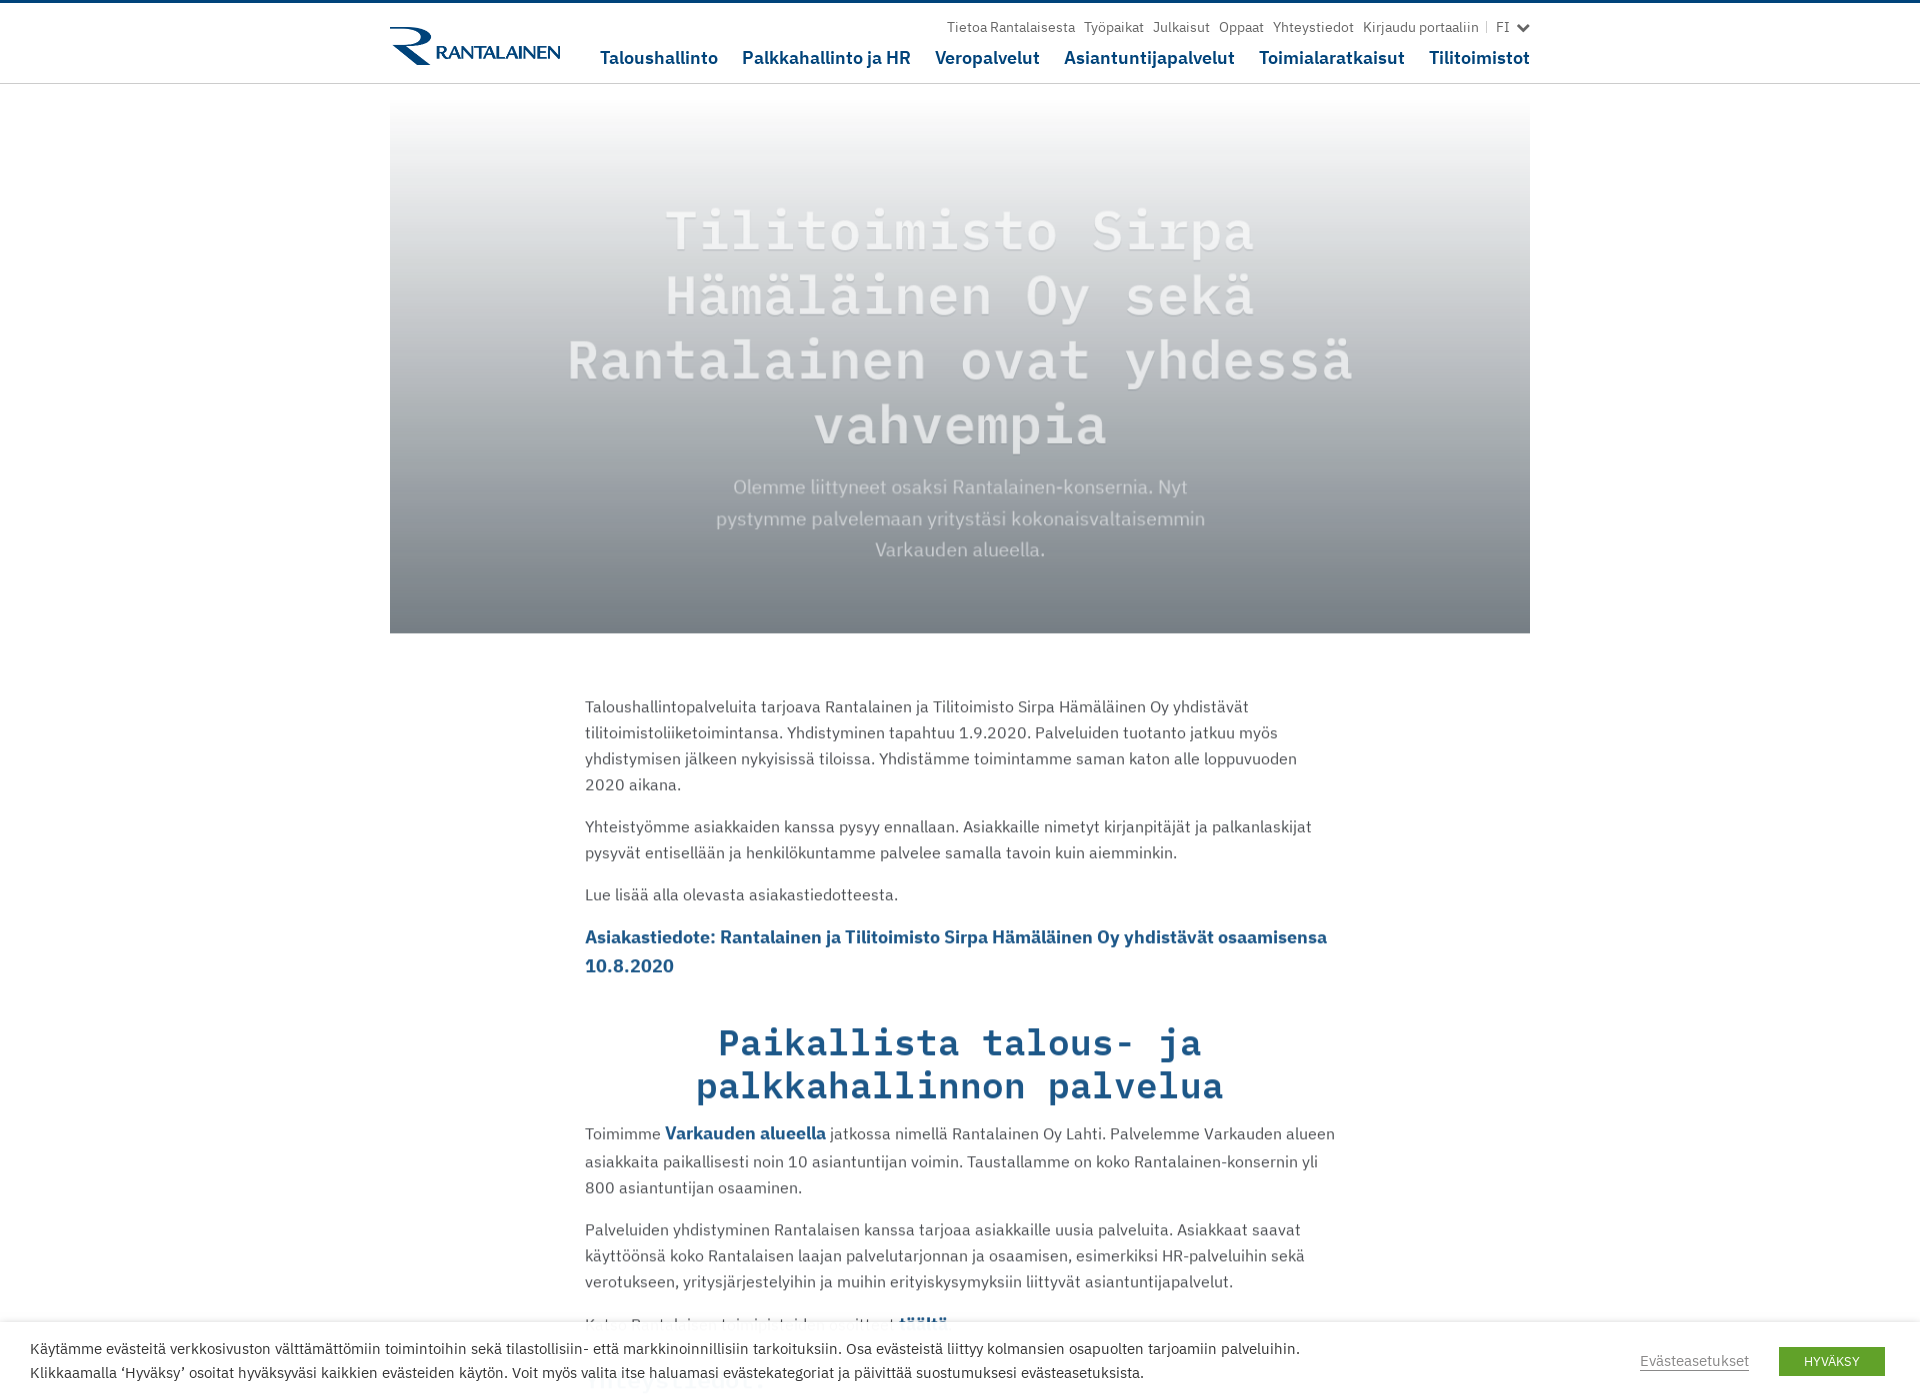 Screenshot for tilitoimistosirpahamalainen.fi